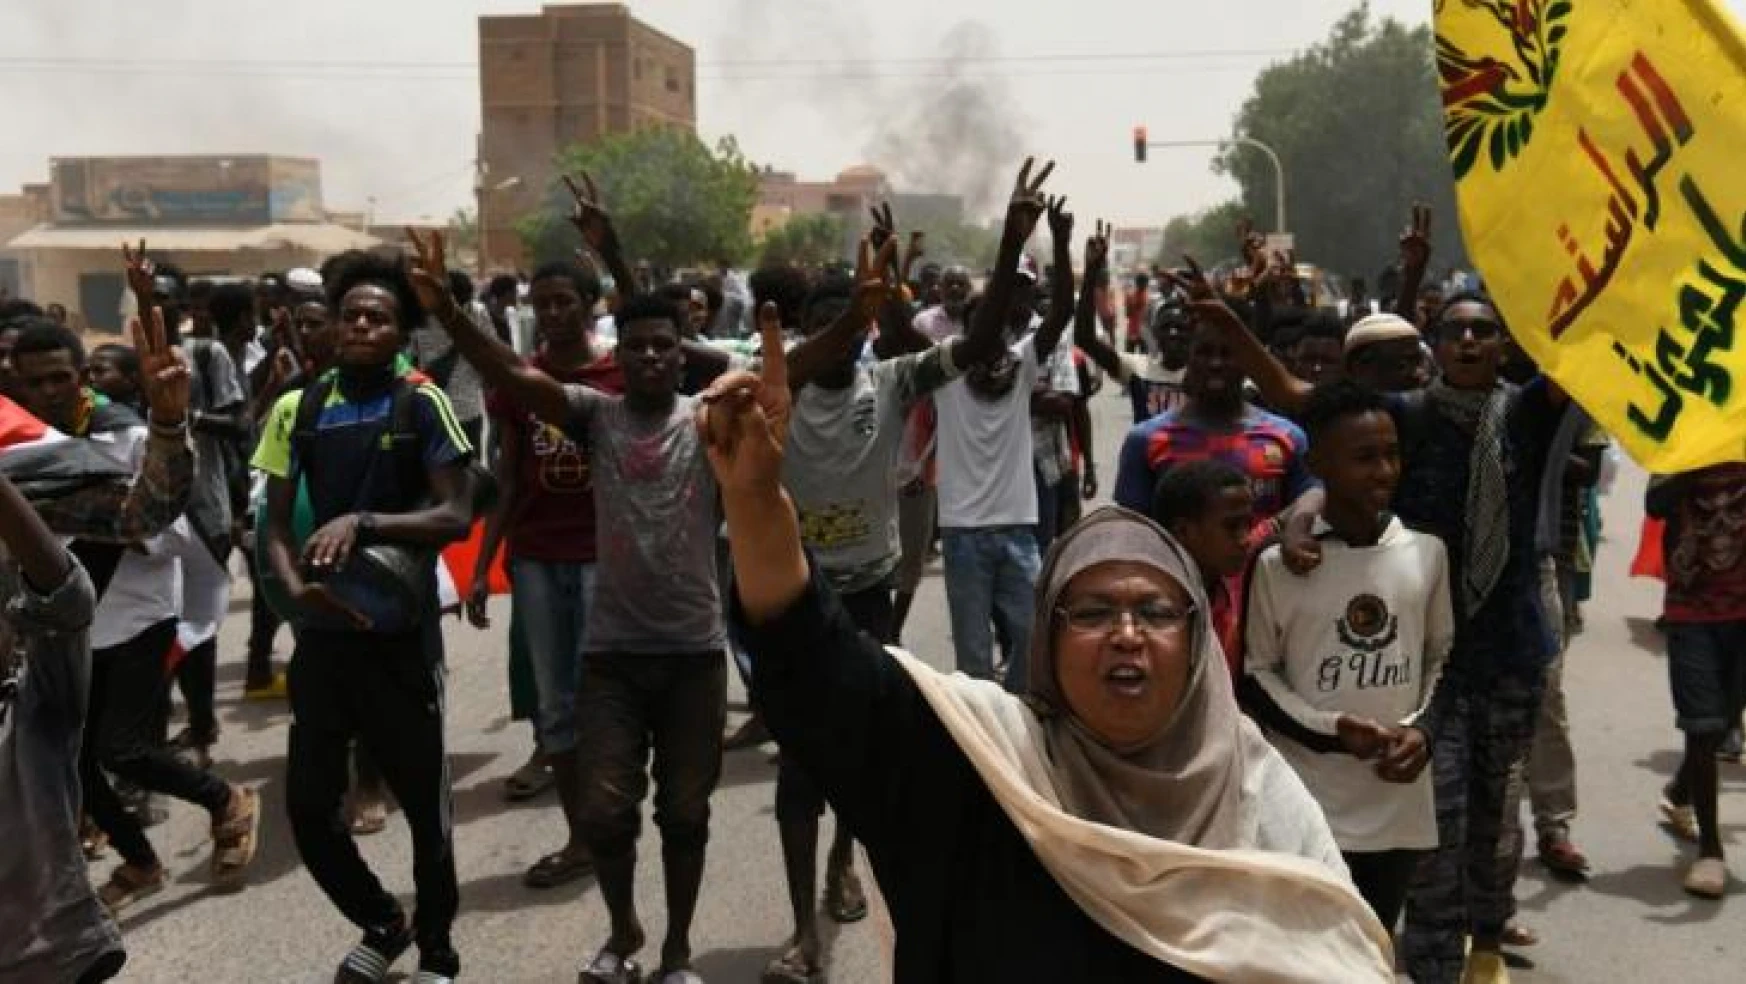 Sudan'da askeri yönetim karşıtı gösterilerde 6 kişi öldü